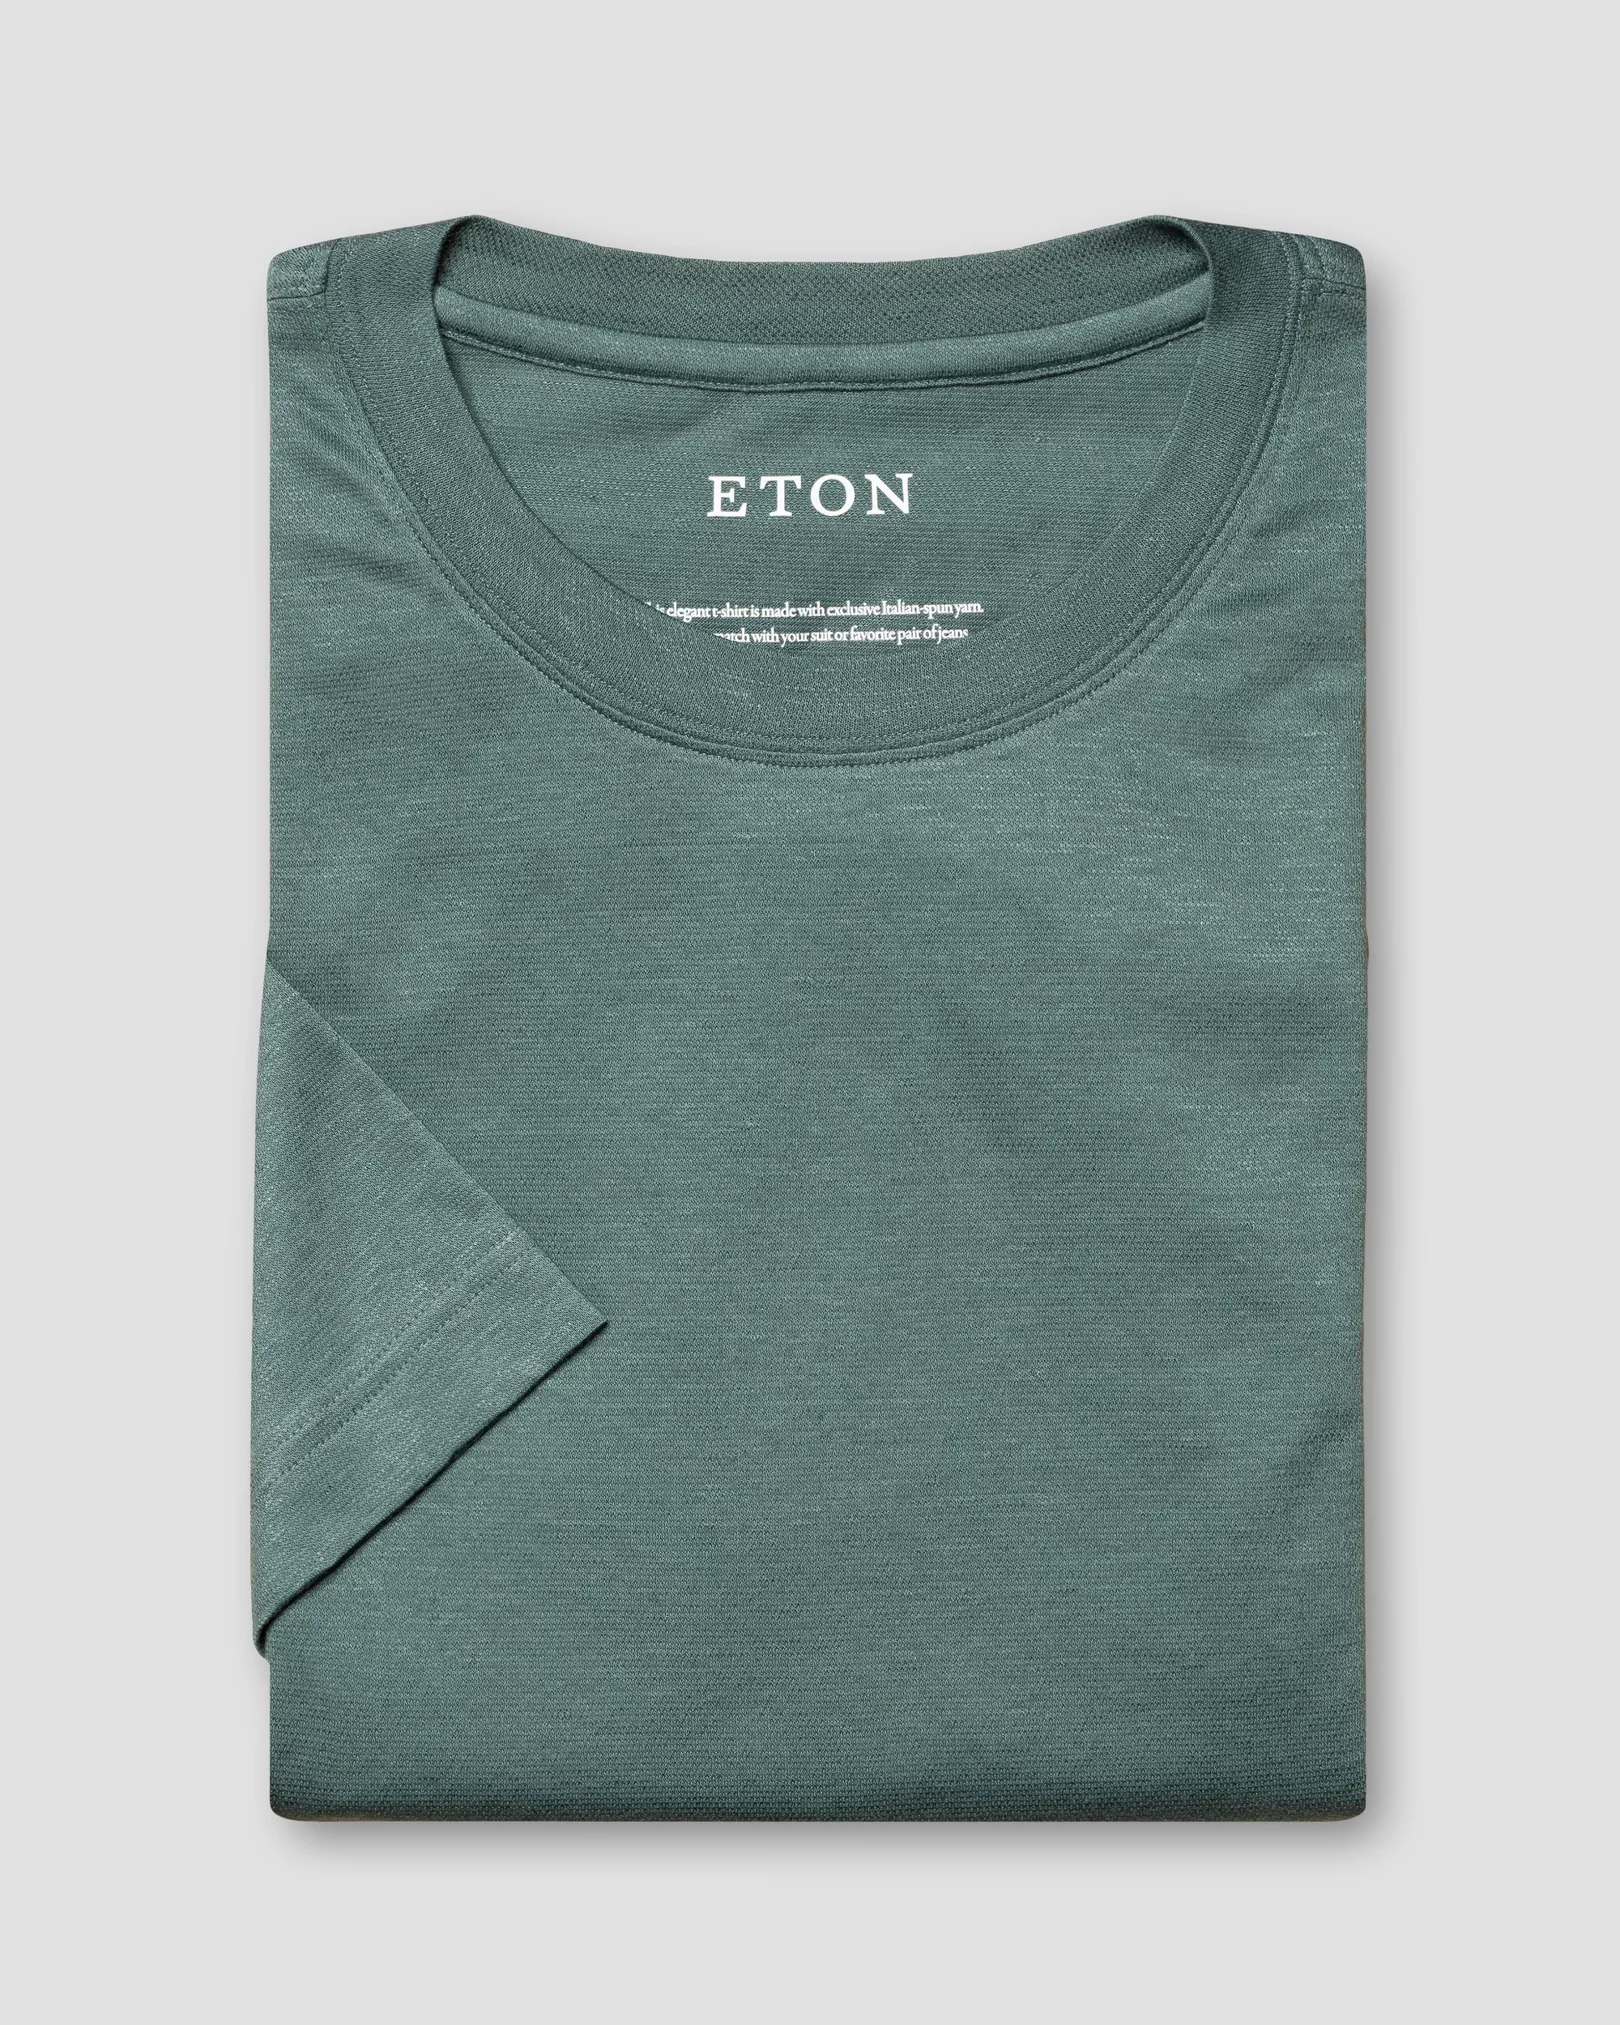 Eton - dark green pique t shirt short sleeve boxfit t shirt